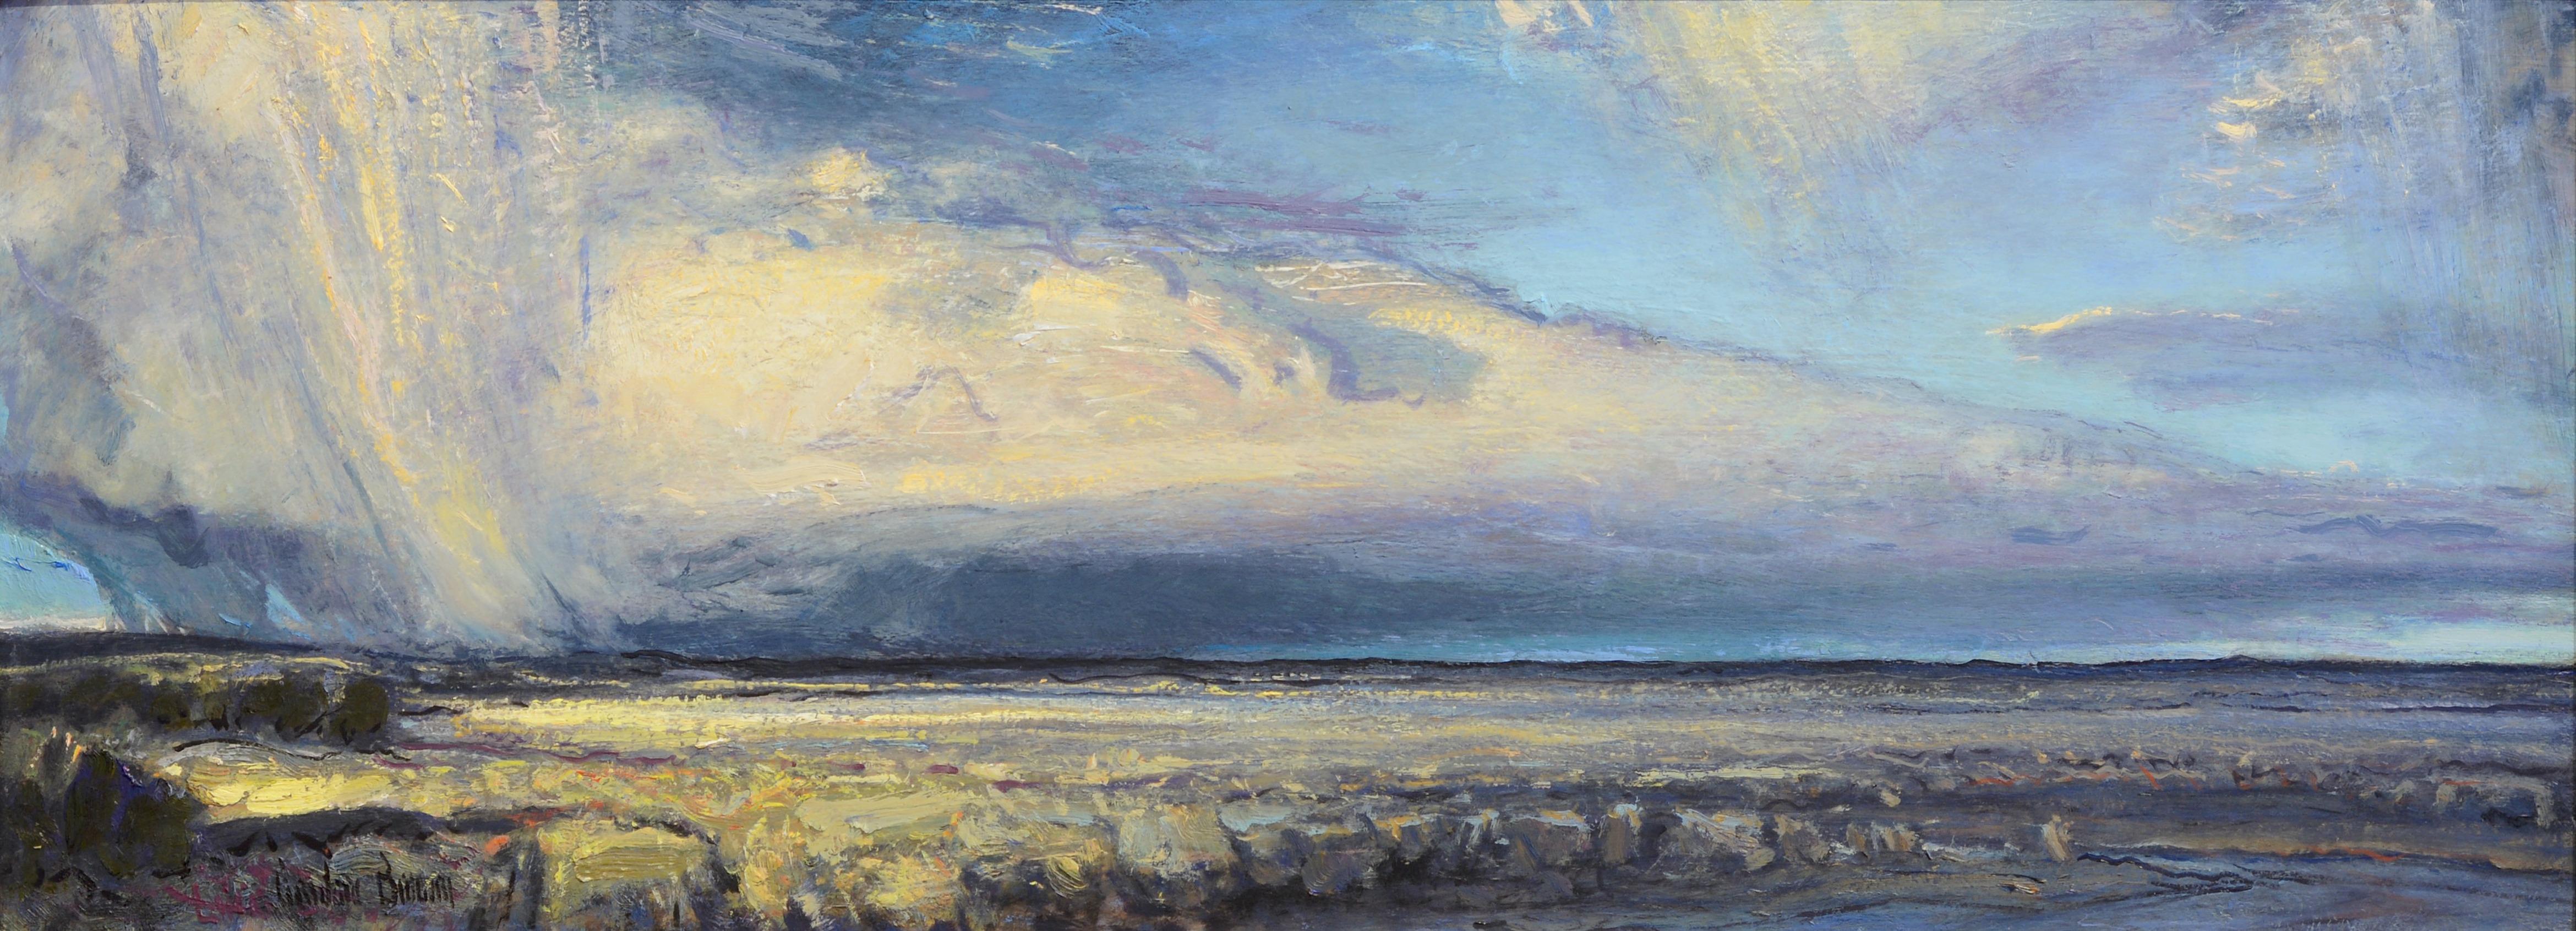 Gordon Brown Landscape Painting – Distant Rain, Ölgemälde